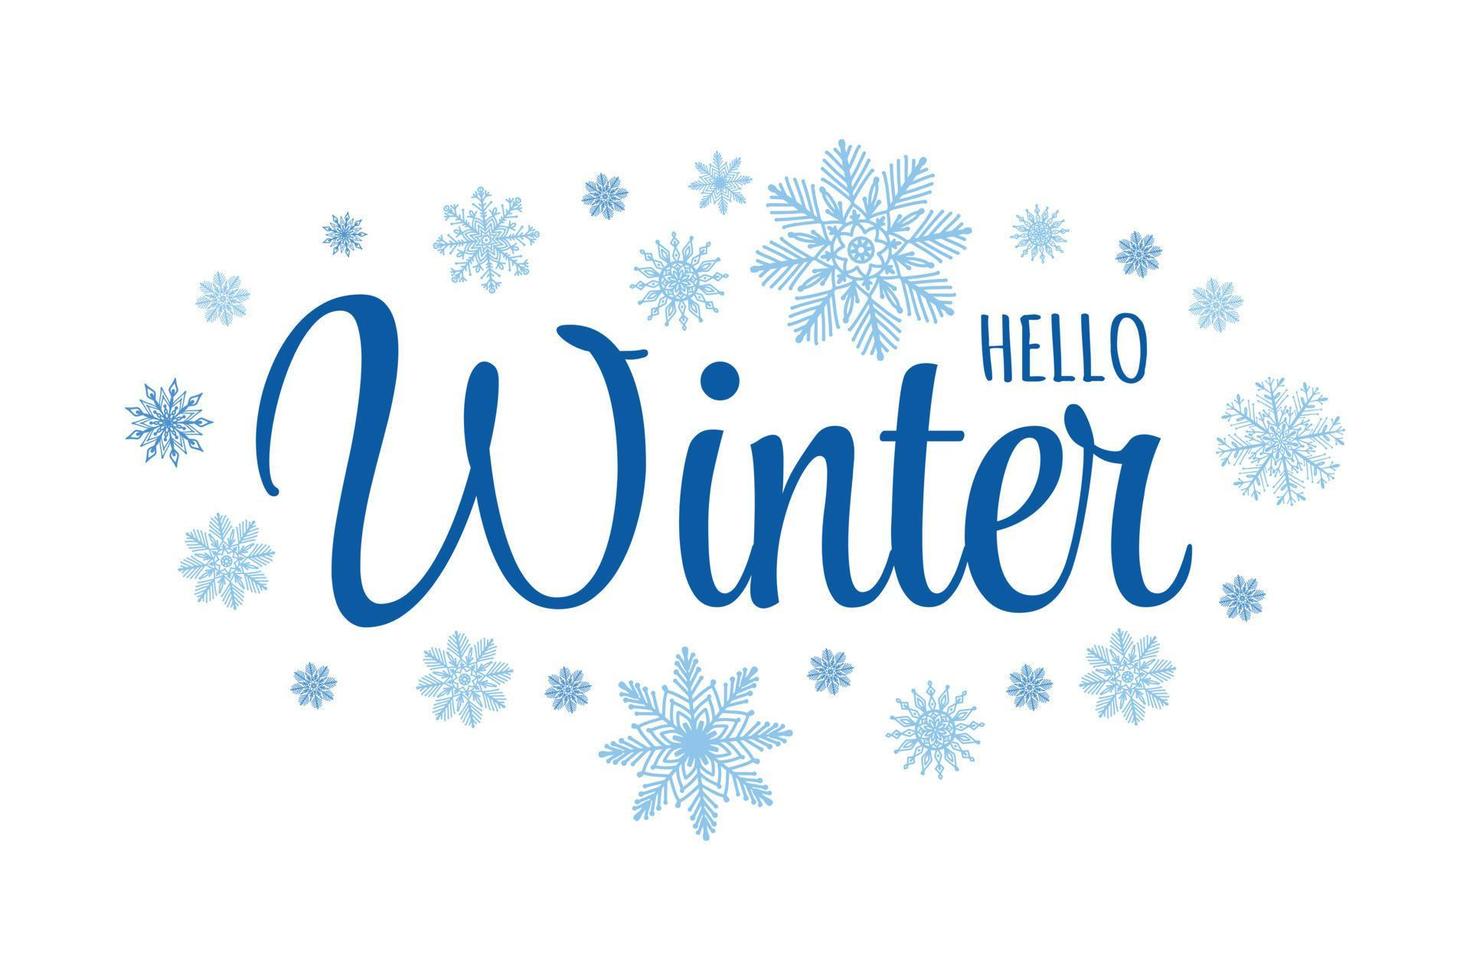 letras de caligrafia cursiva de texto bonito - Olá inverno. cartão sazonal com flocos de neve desenhados à mão diferente. vetor